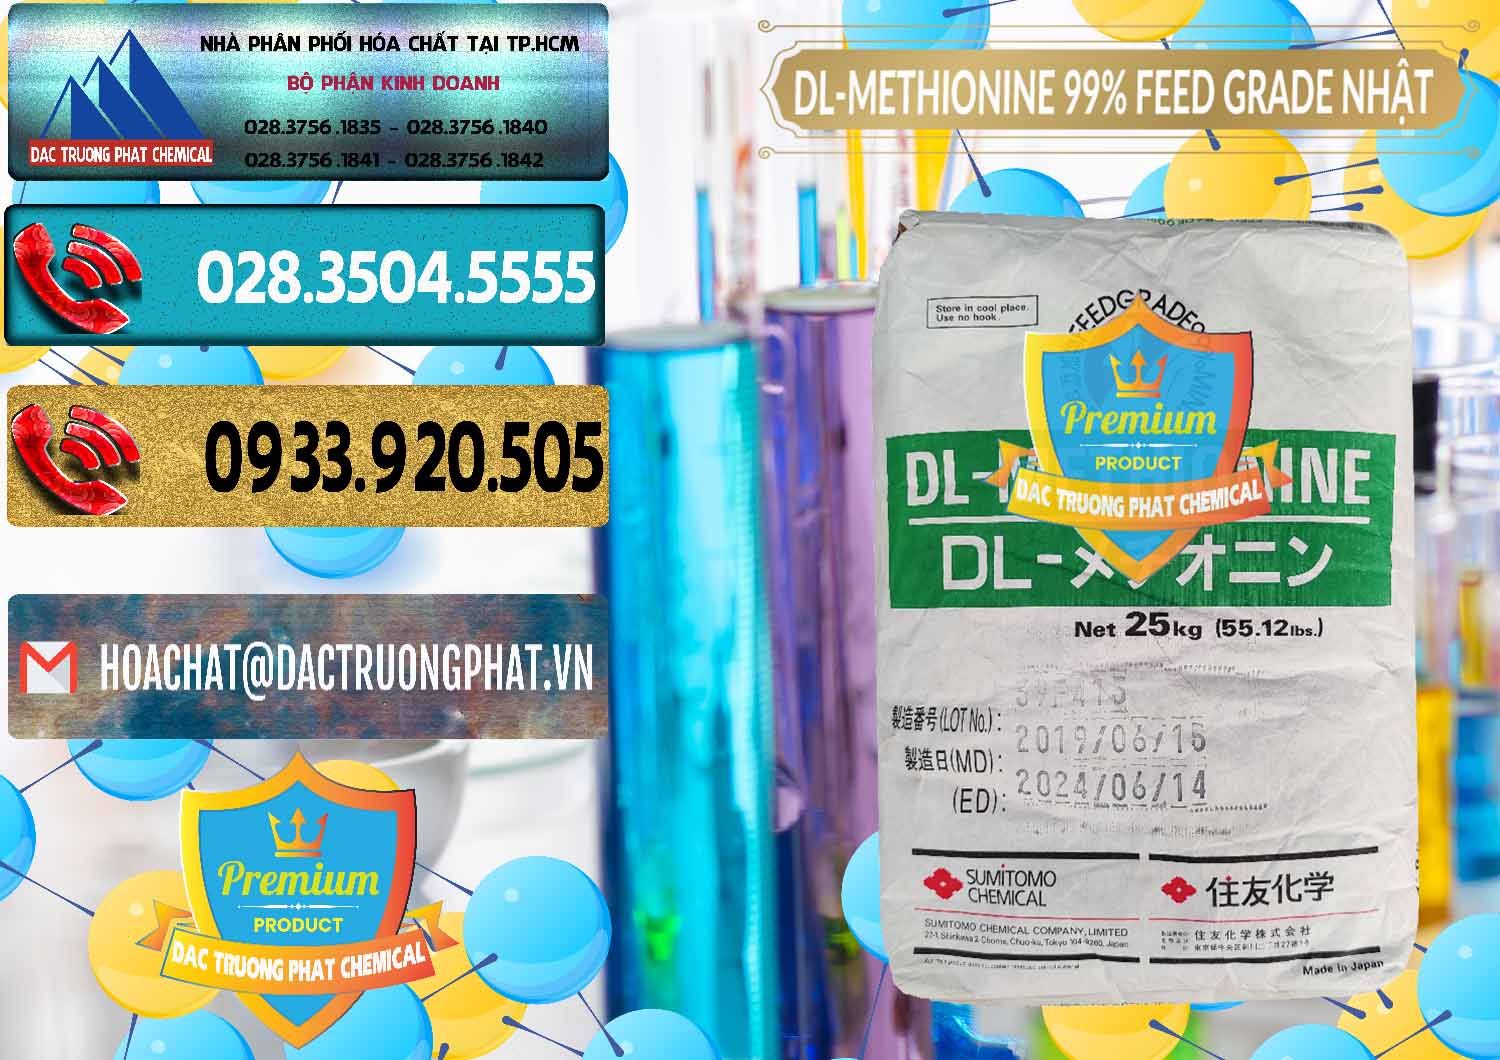 Cty chuyên bán - cung ứng DL-Methionine - C5H11NO2S Feed Grade Sumitomo Nhật Bản Japan - 0313 - Công ty chuyên kinh doanh và cung cấp hóa chất tại TP.HCM - hoachatdetnhuom.com